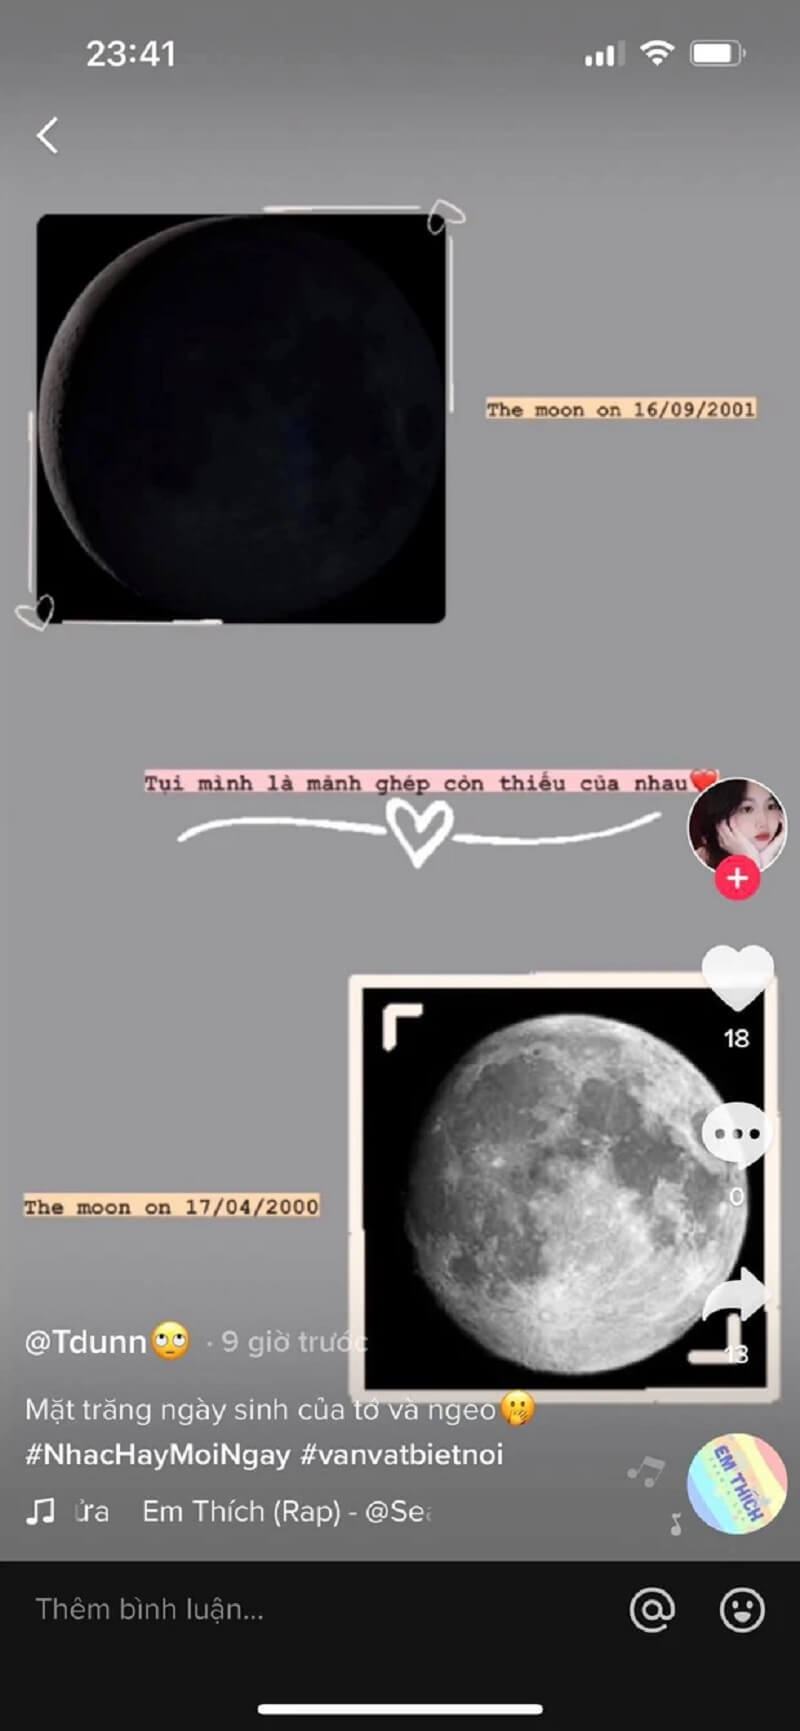 Trend hình nền mặt trăng, giải mã từ góc nhìn “cặp đôi học” - Học ...